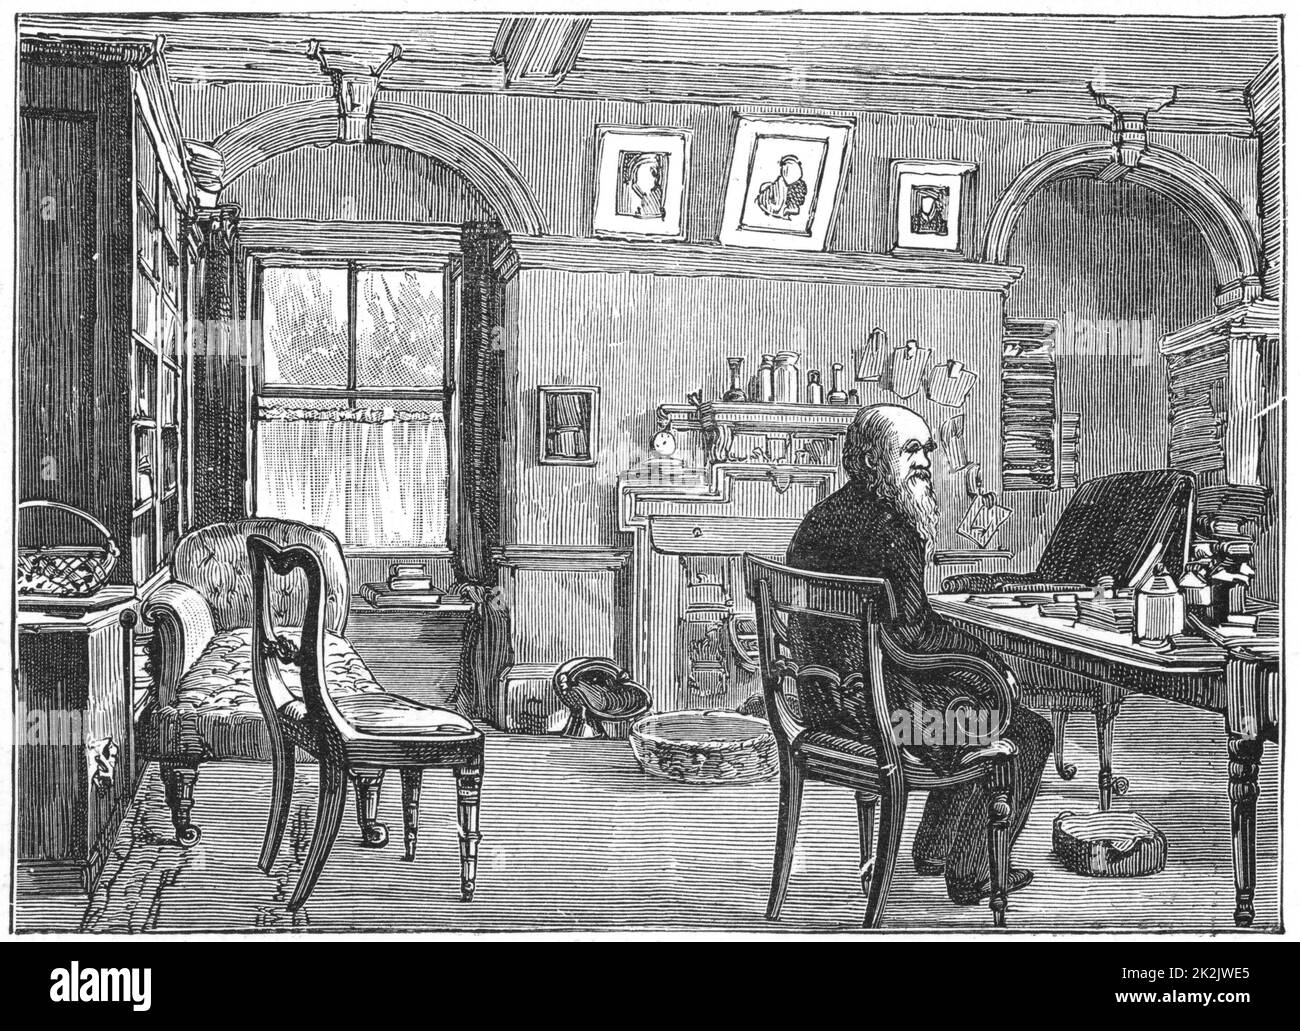 Charles Darwin (1809-1882) in seiner Studie in Down House, Beckenham, Kent. Englischer Naturforscher. Evolution durch natürliche Selektion. Gravur Stockfoto